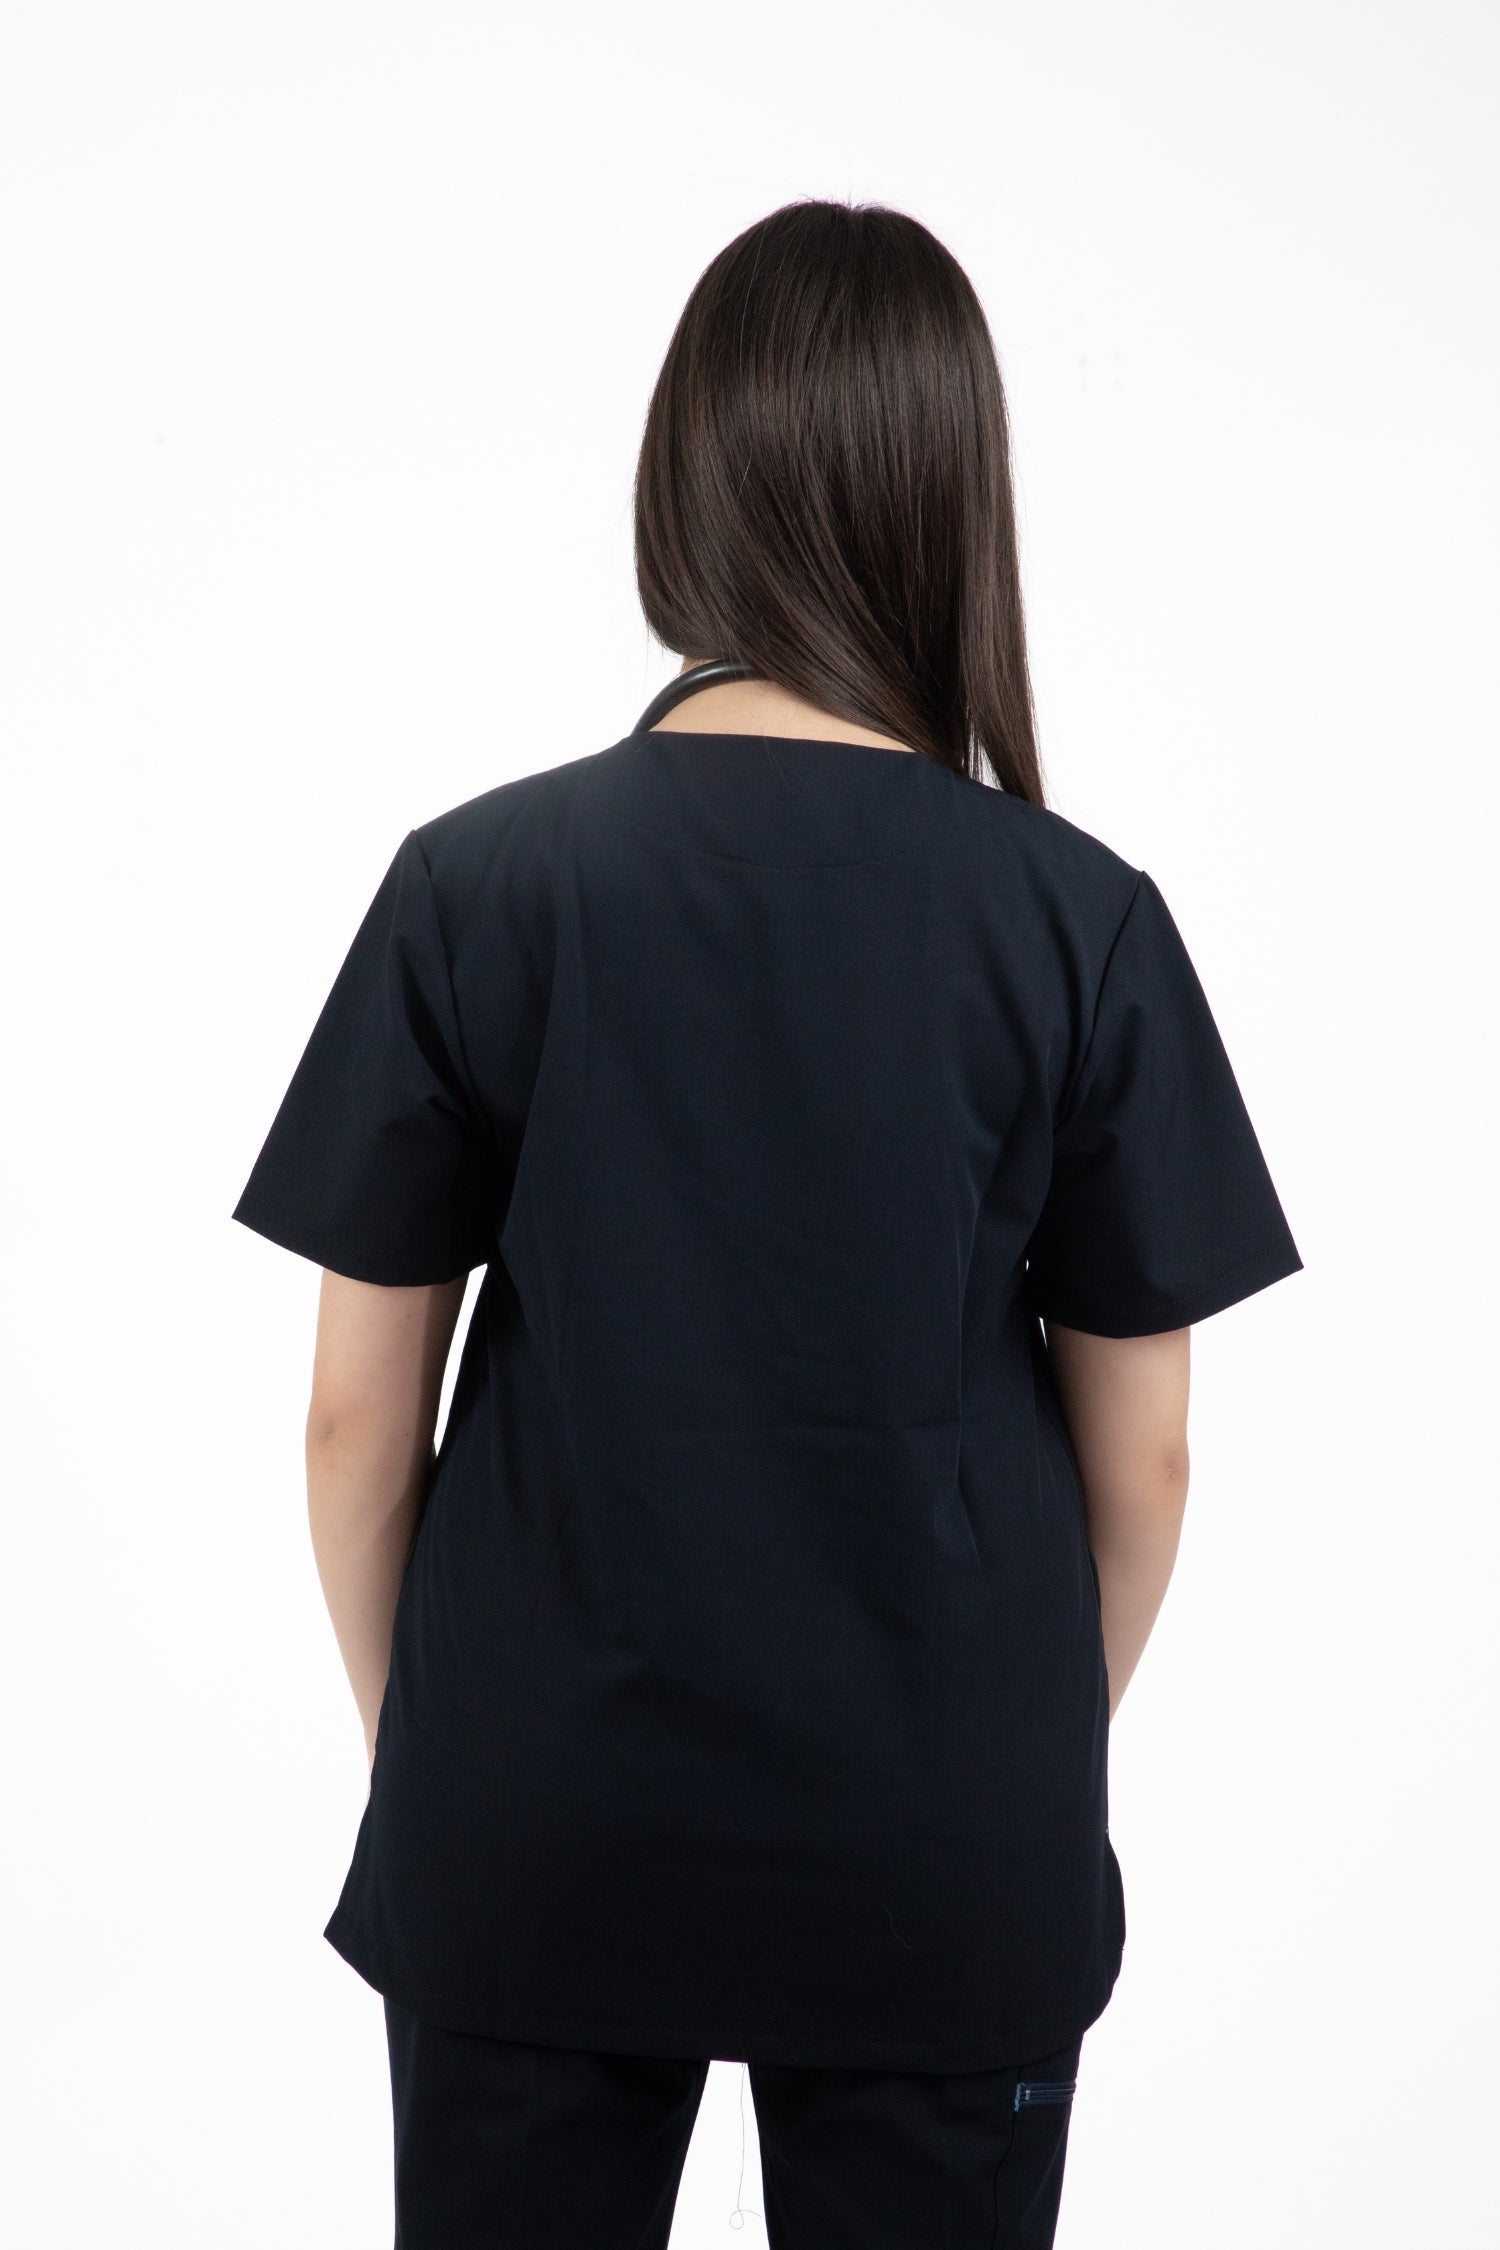 Vue arrière d’une femme portant une tunique médicale en t-shirt noir pour tenues médicales